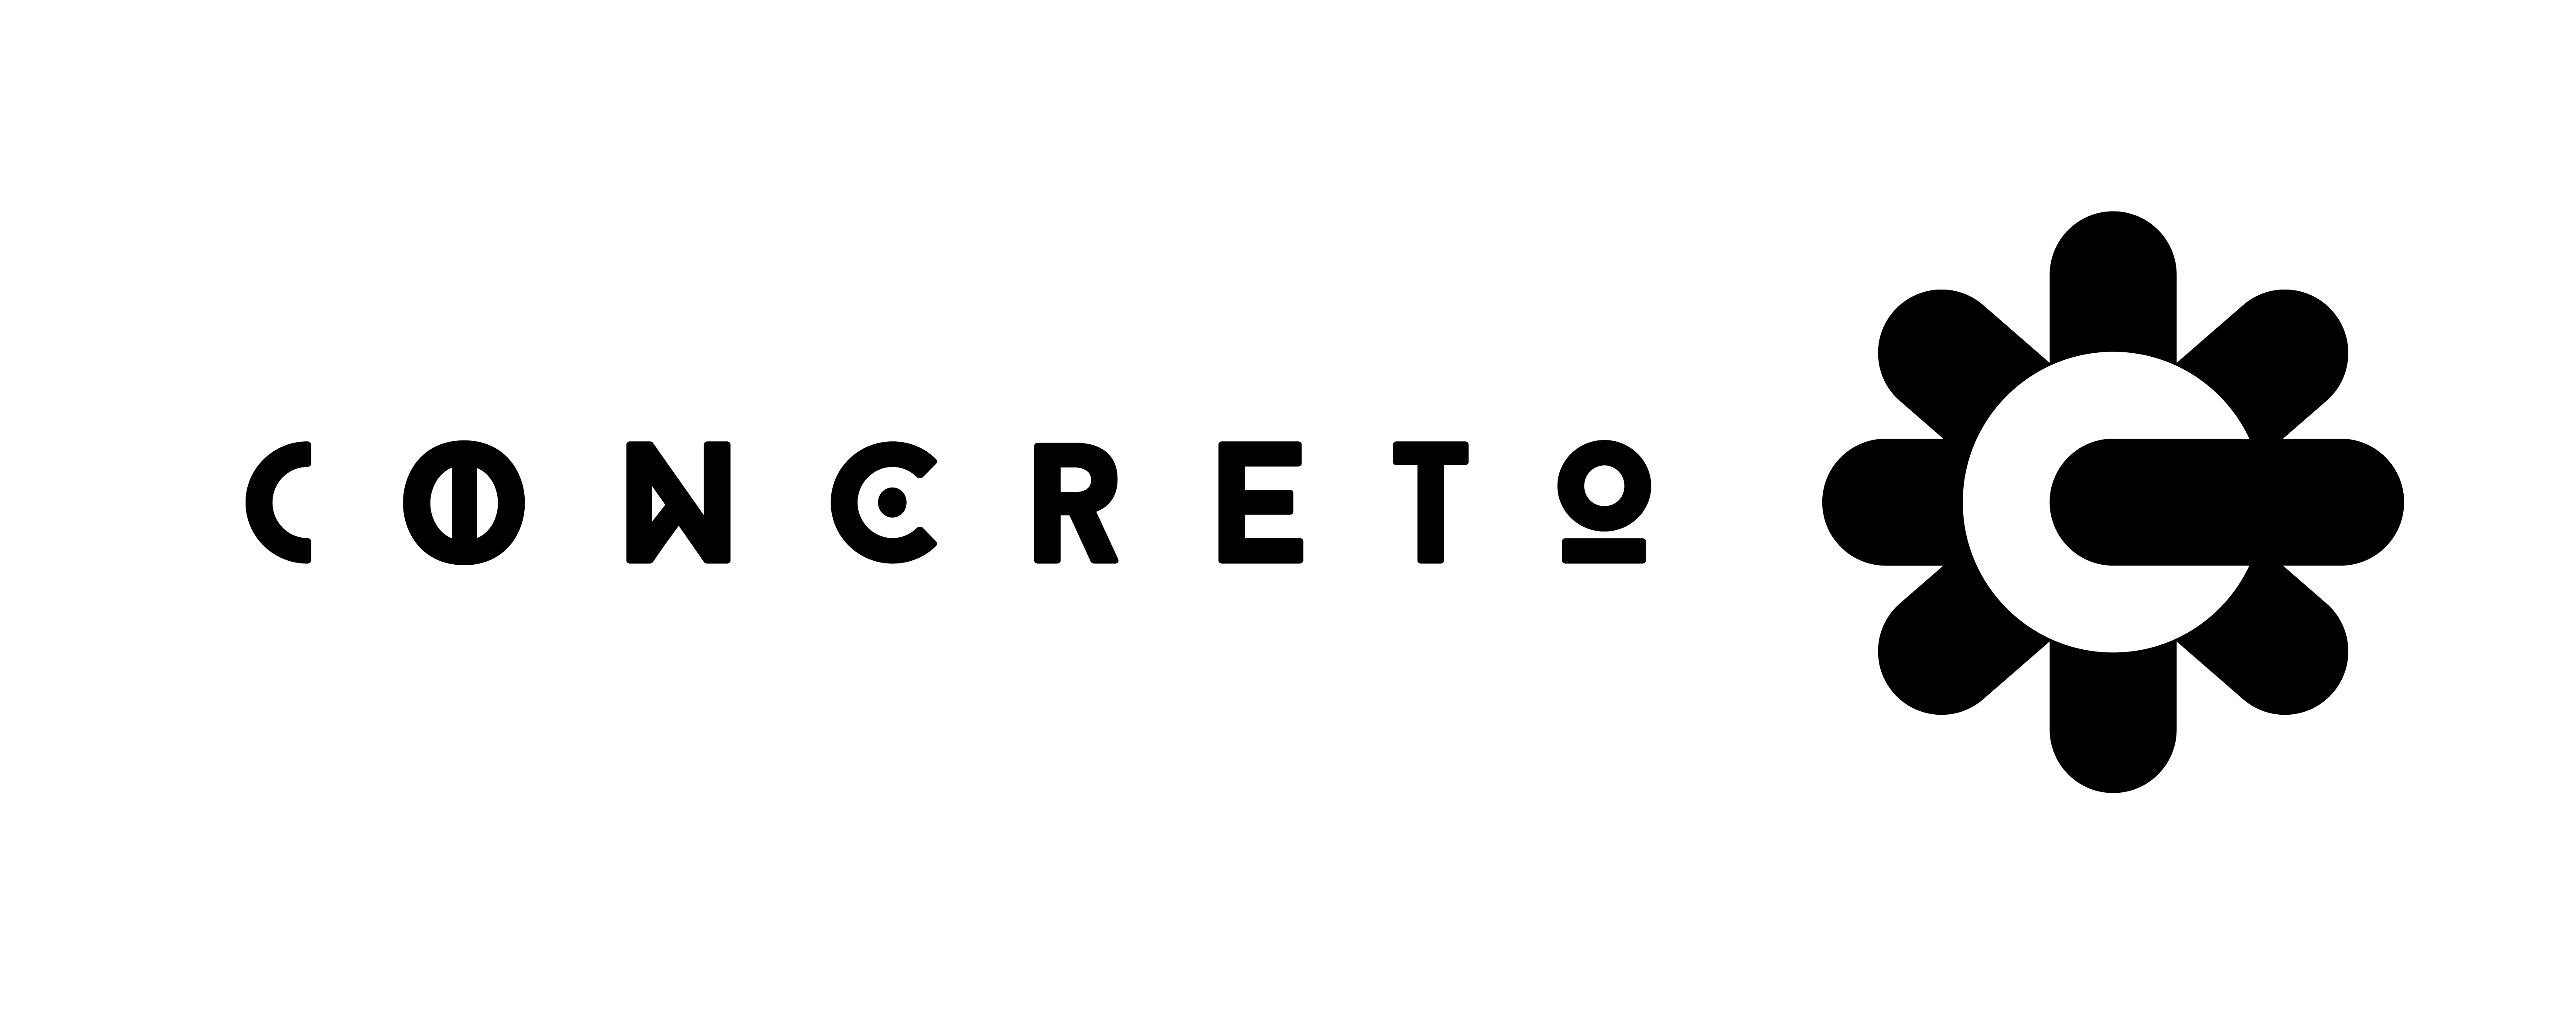 Concreto Logo Evo3